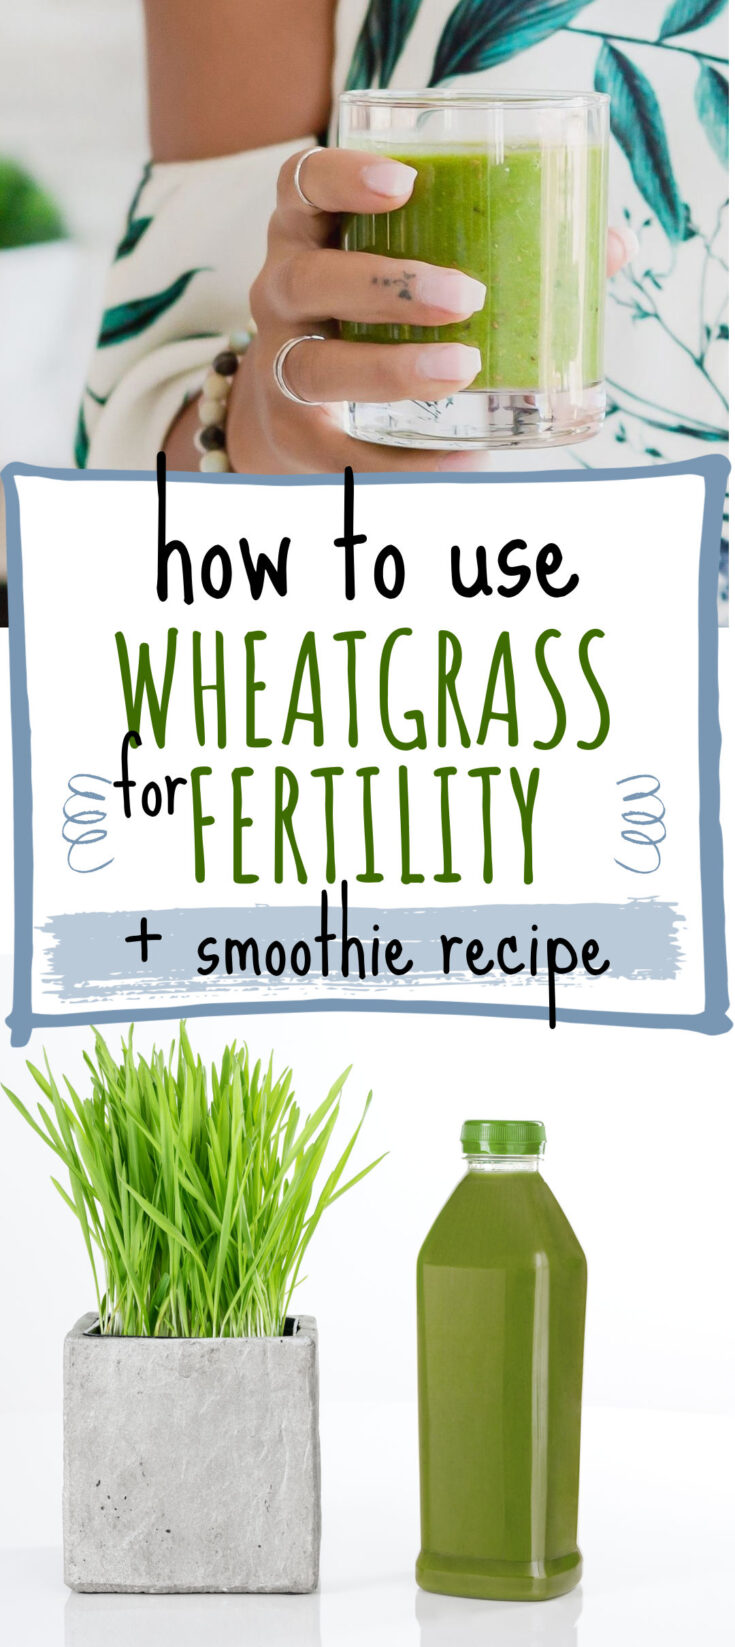 wheatgrass and fertility